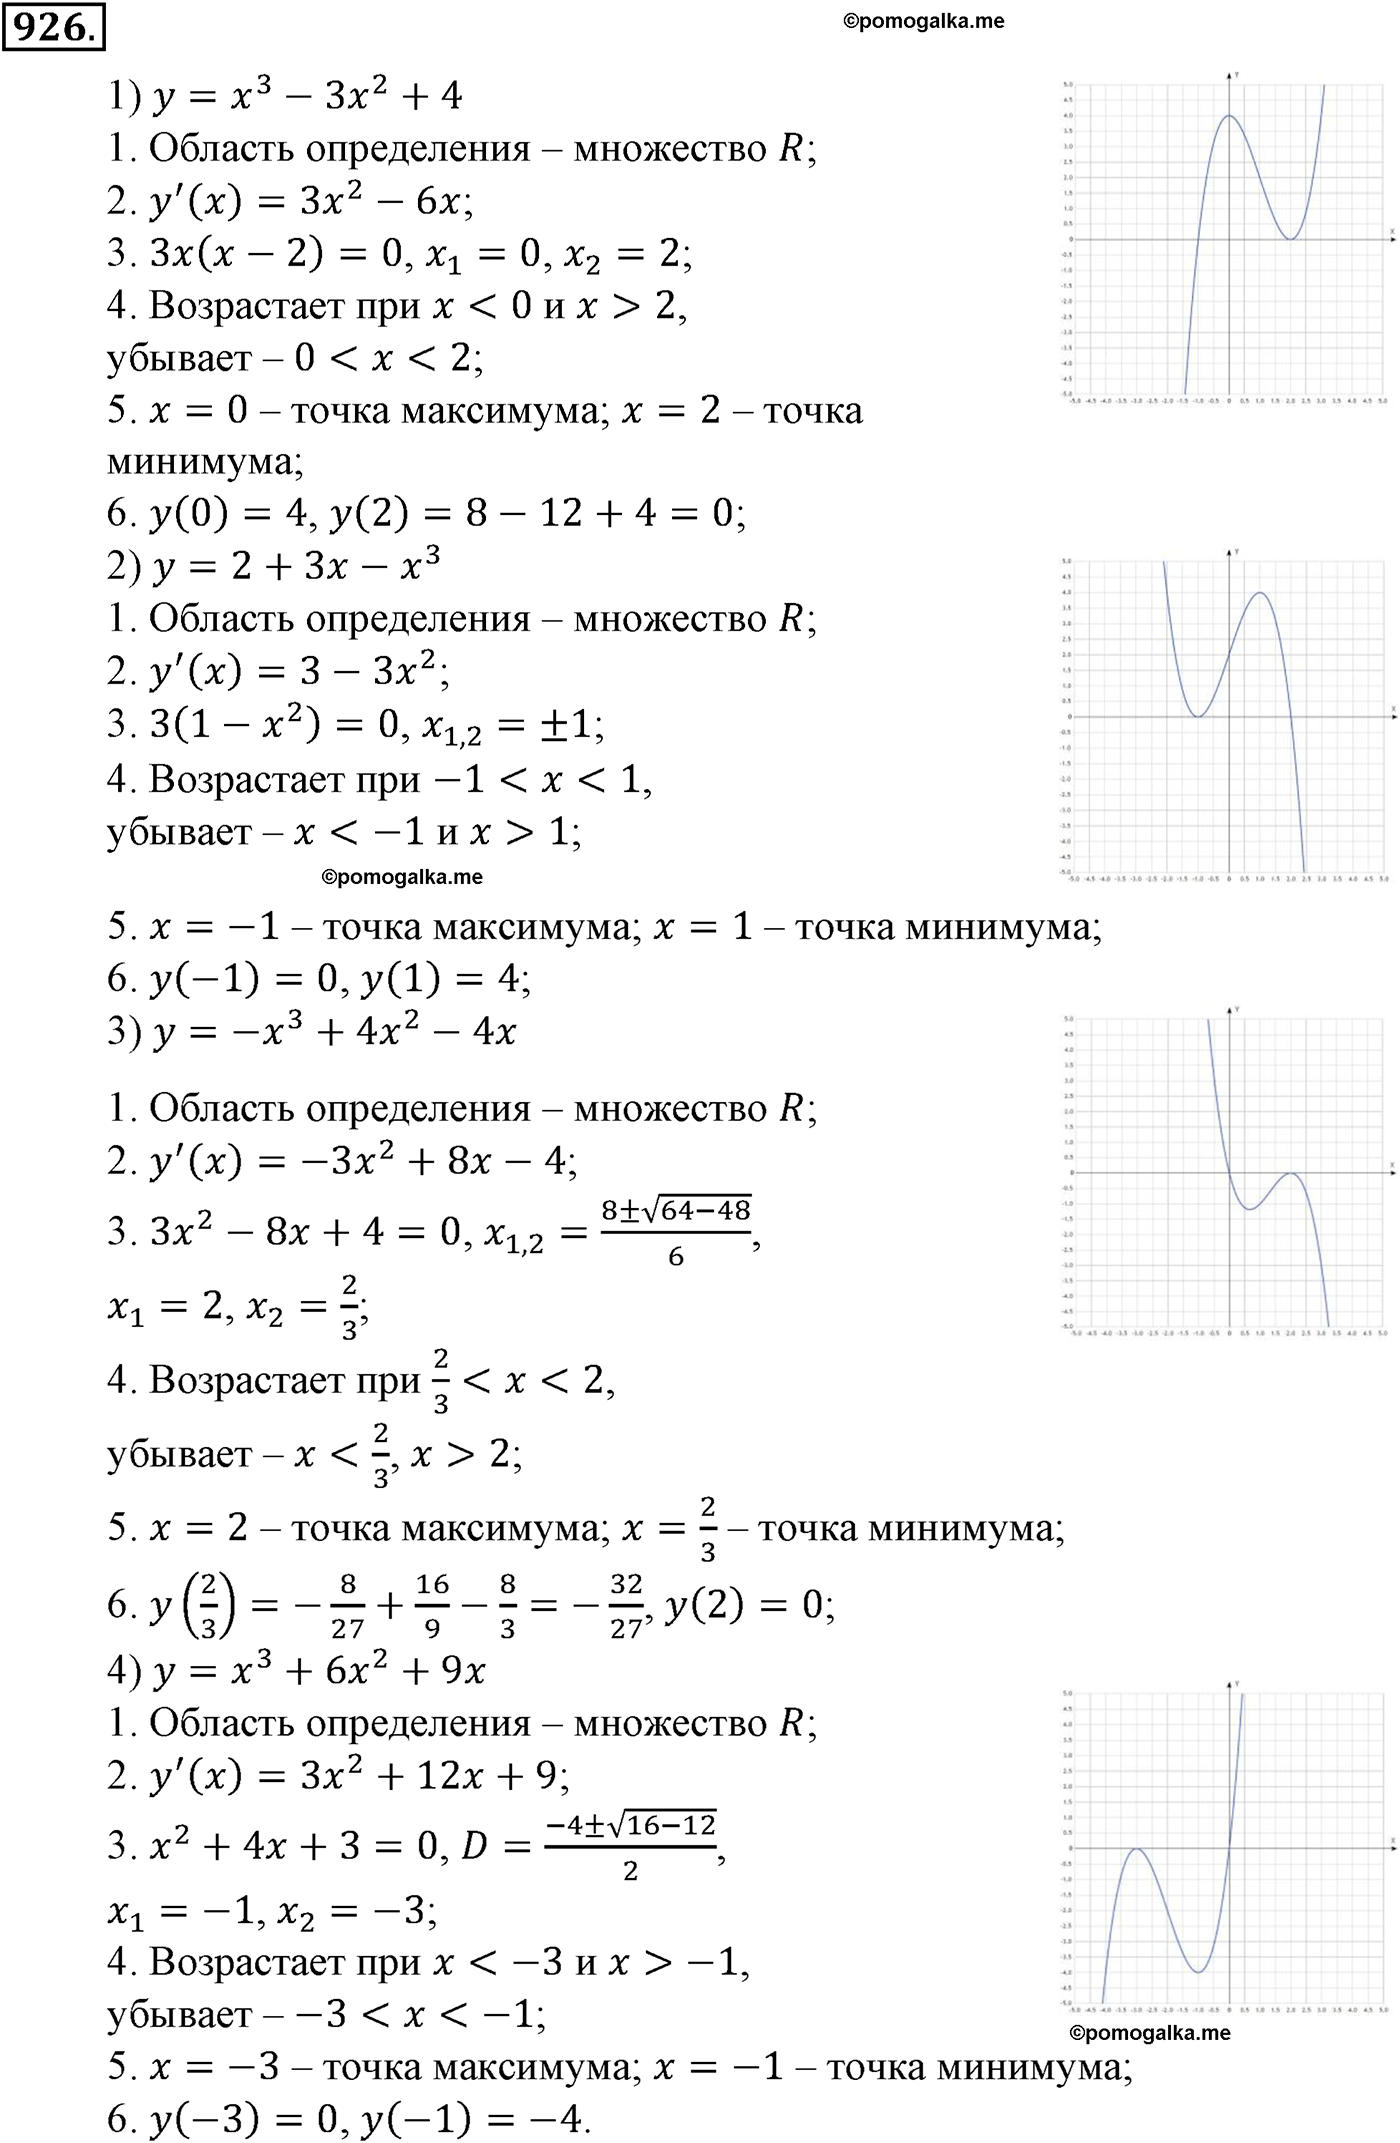 разбор задачи №926 по алгебре за 10-11 класс из учебника Алимова, Колягина